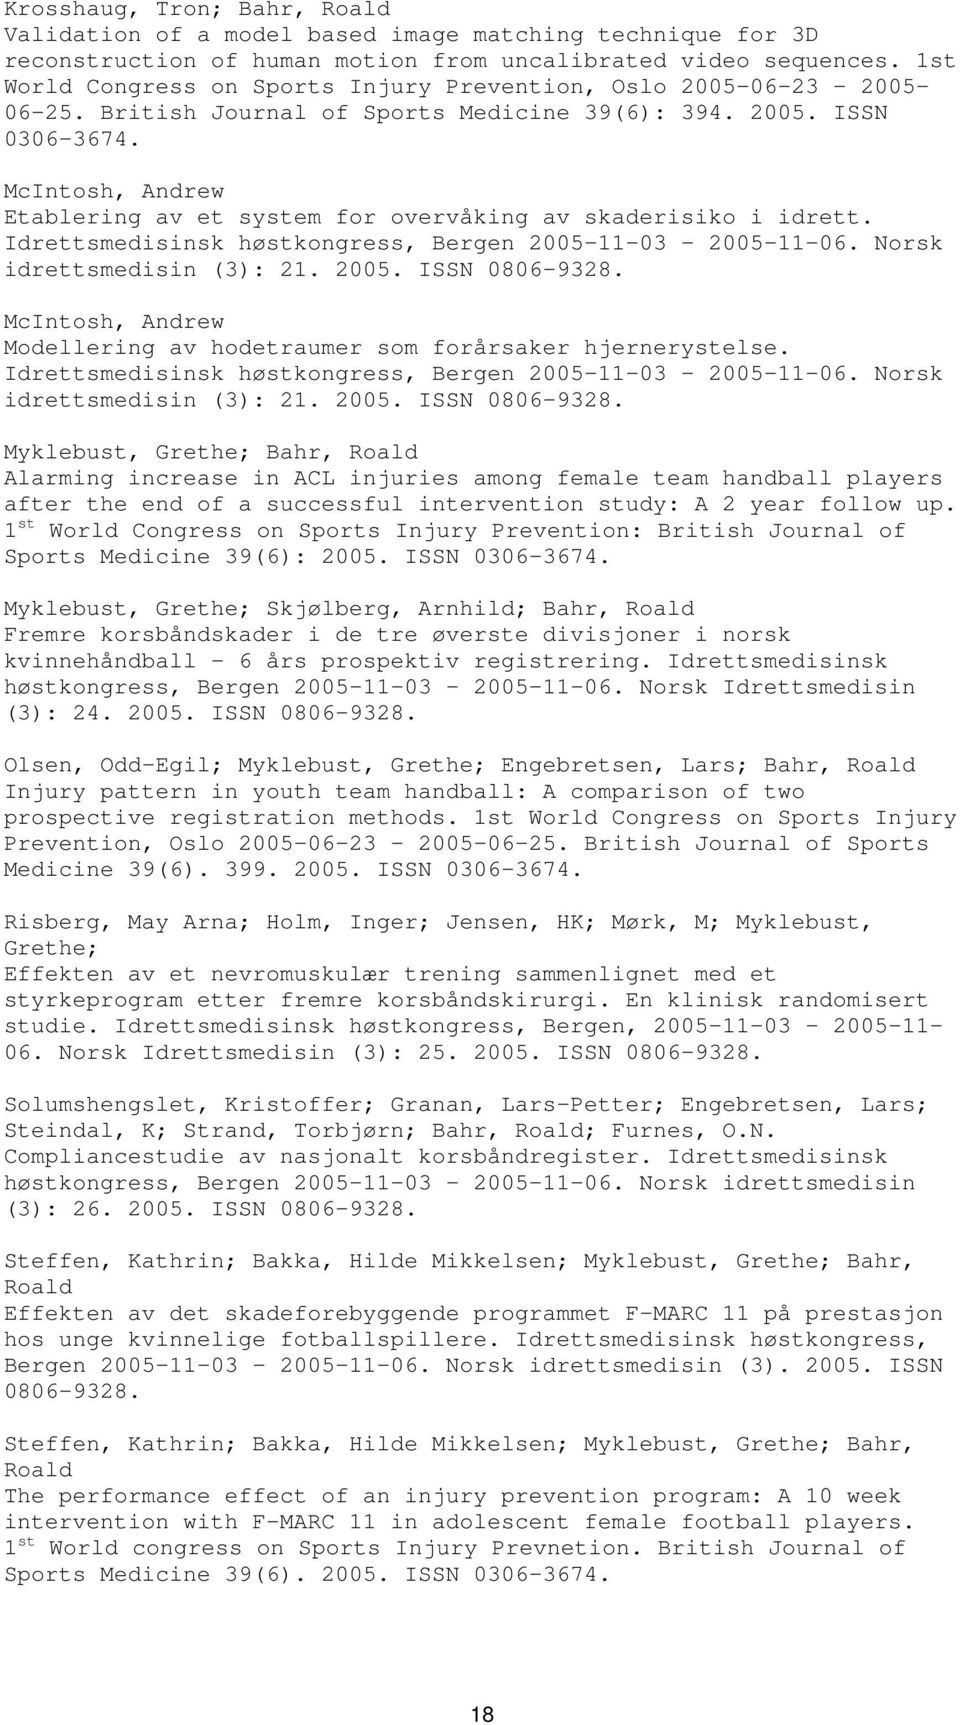 McIntosh, Andrew Etablering av et system for overvåking av skaderisiko i idrett. Idrettsmedisinsk høstkongress, Bergen 2005-11-03-2005-11-06. Norsk idrettsmedisin (3): 21. 2005. ISSN 0806-9328.